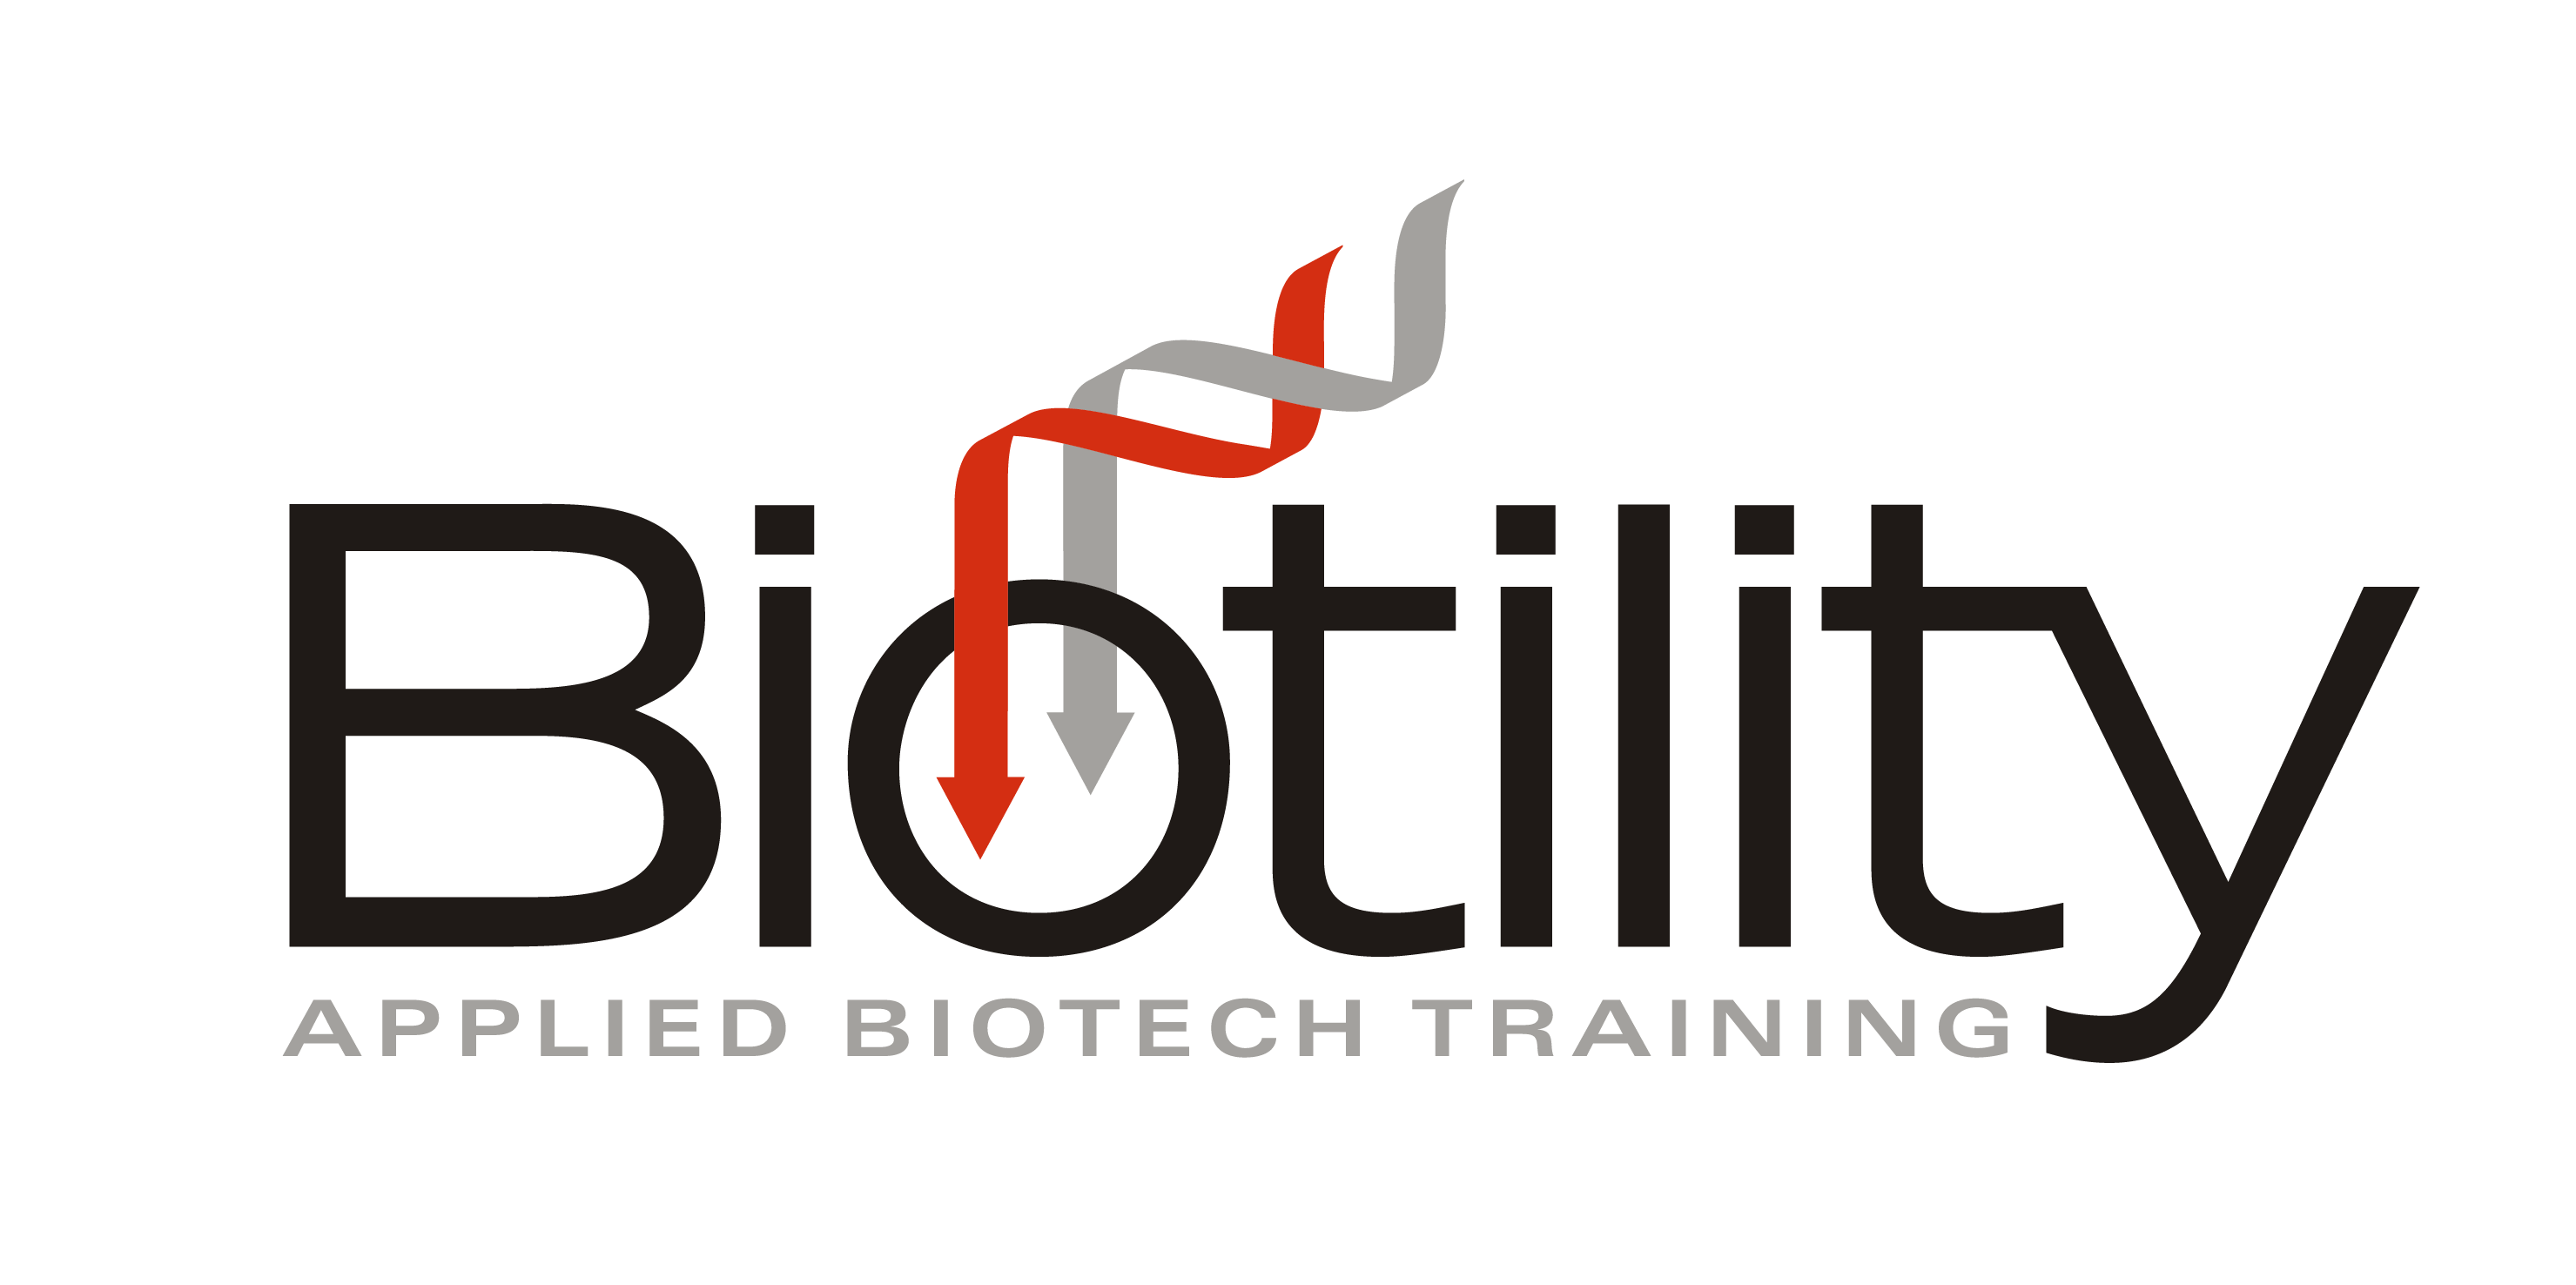 Biotility logo